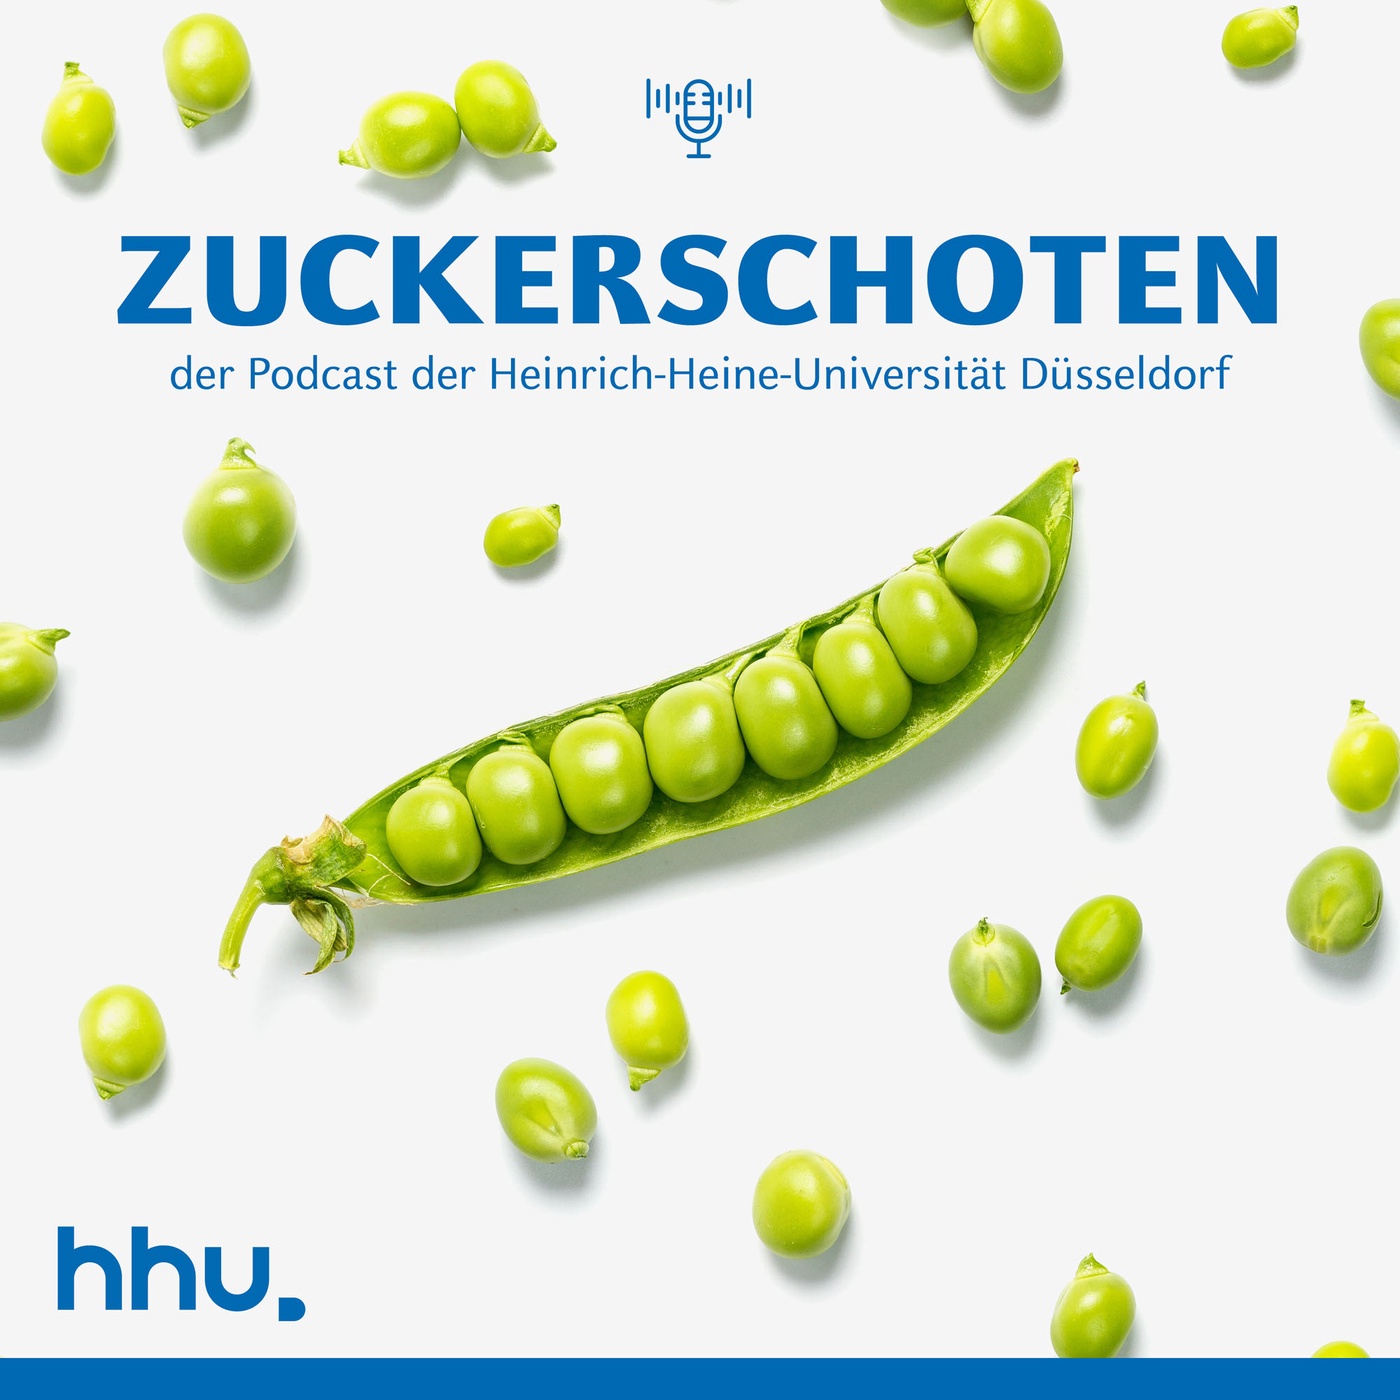 Zuckerschoten - der Podcast der Heinrich-Heine-Universität